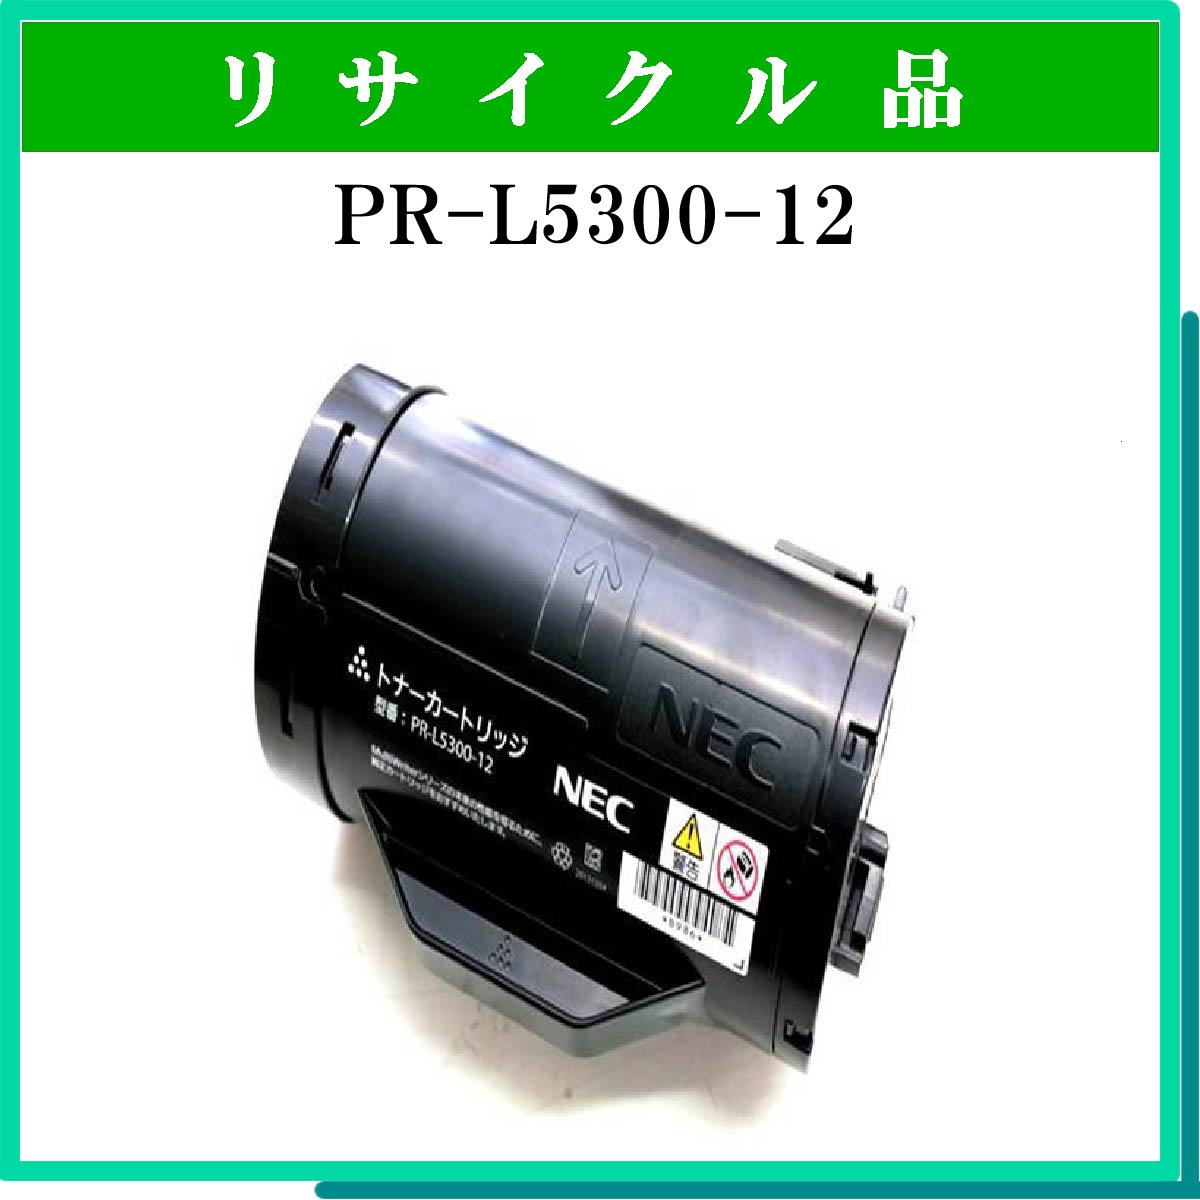 PR-L5300-12